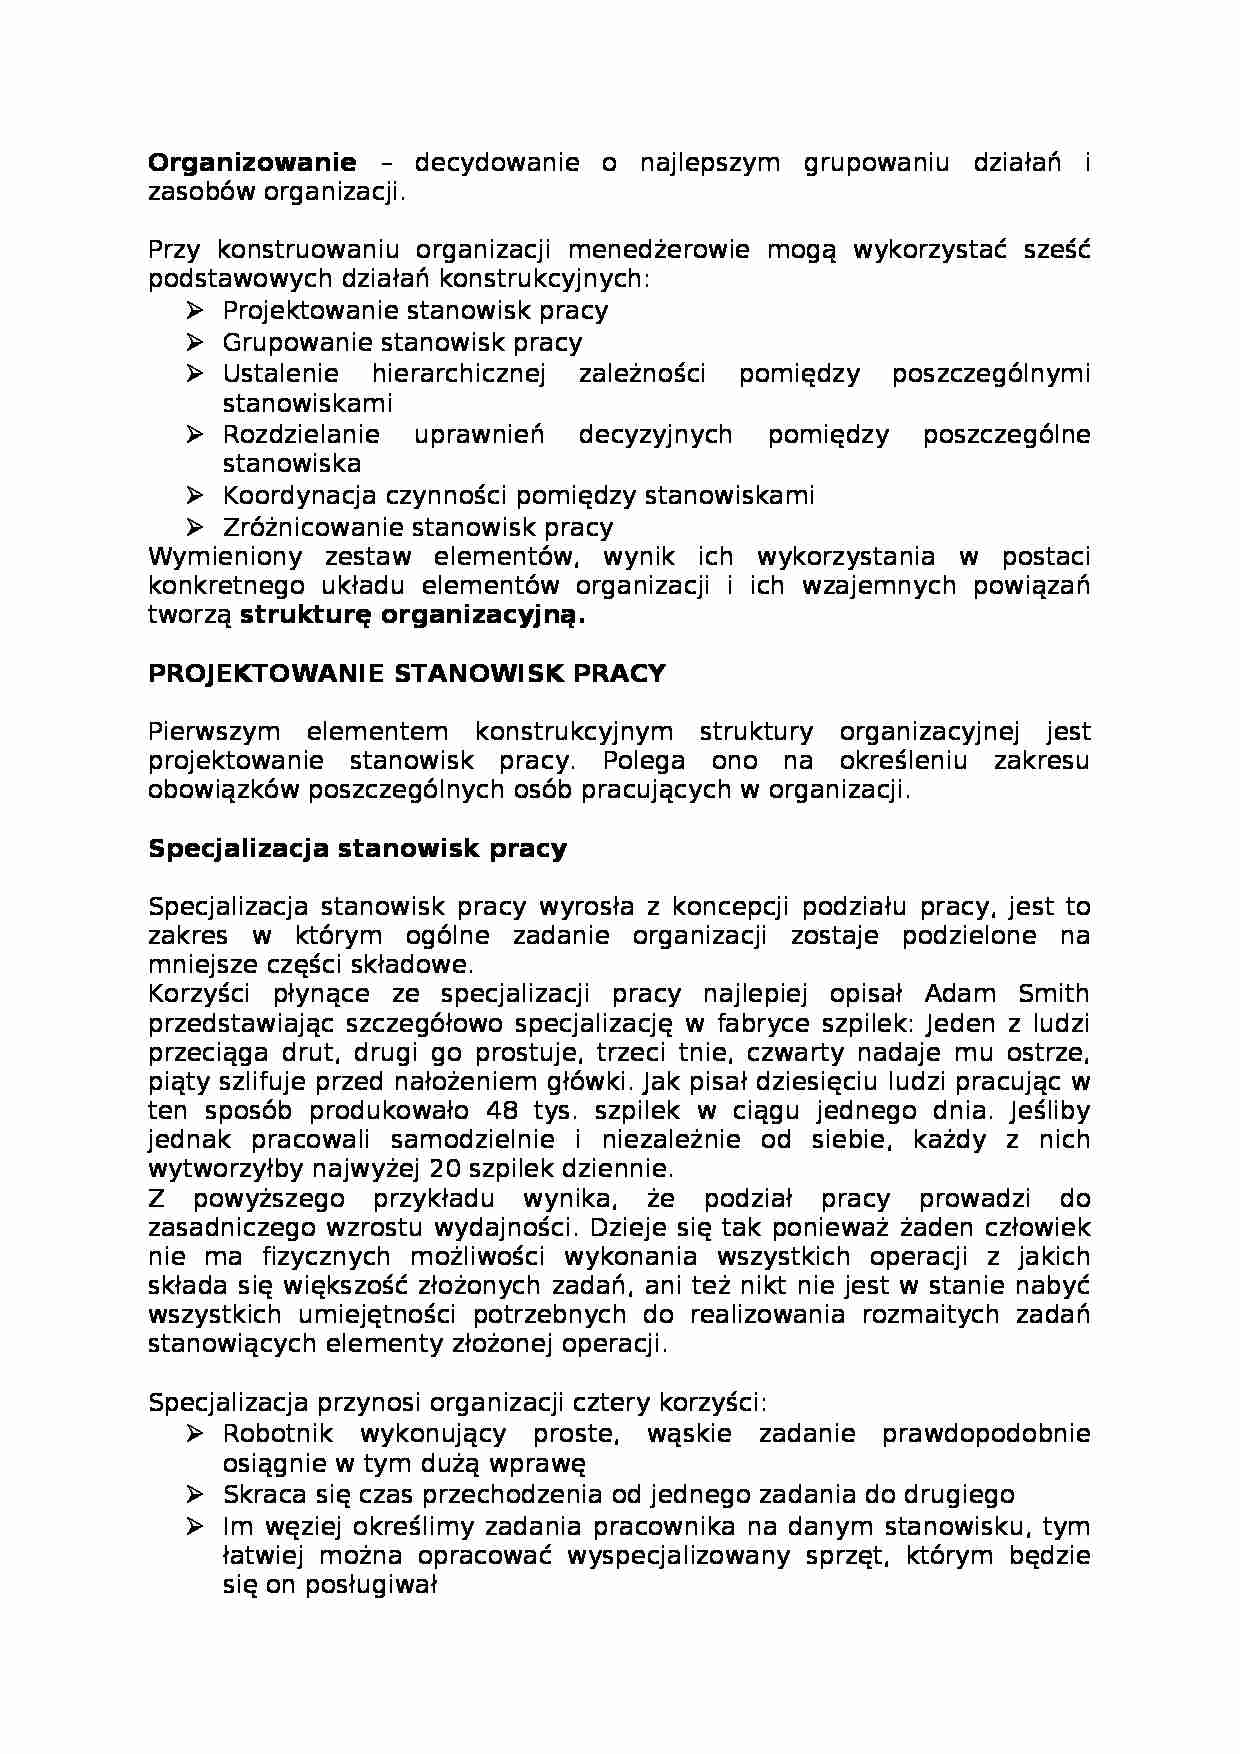 Stanowisko pracy - organizacja pracy - strona 1